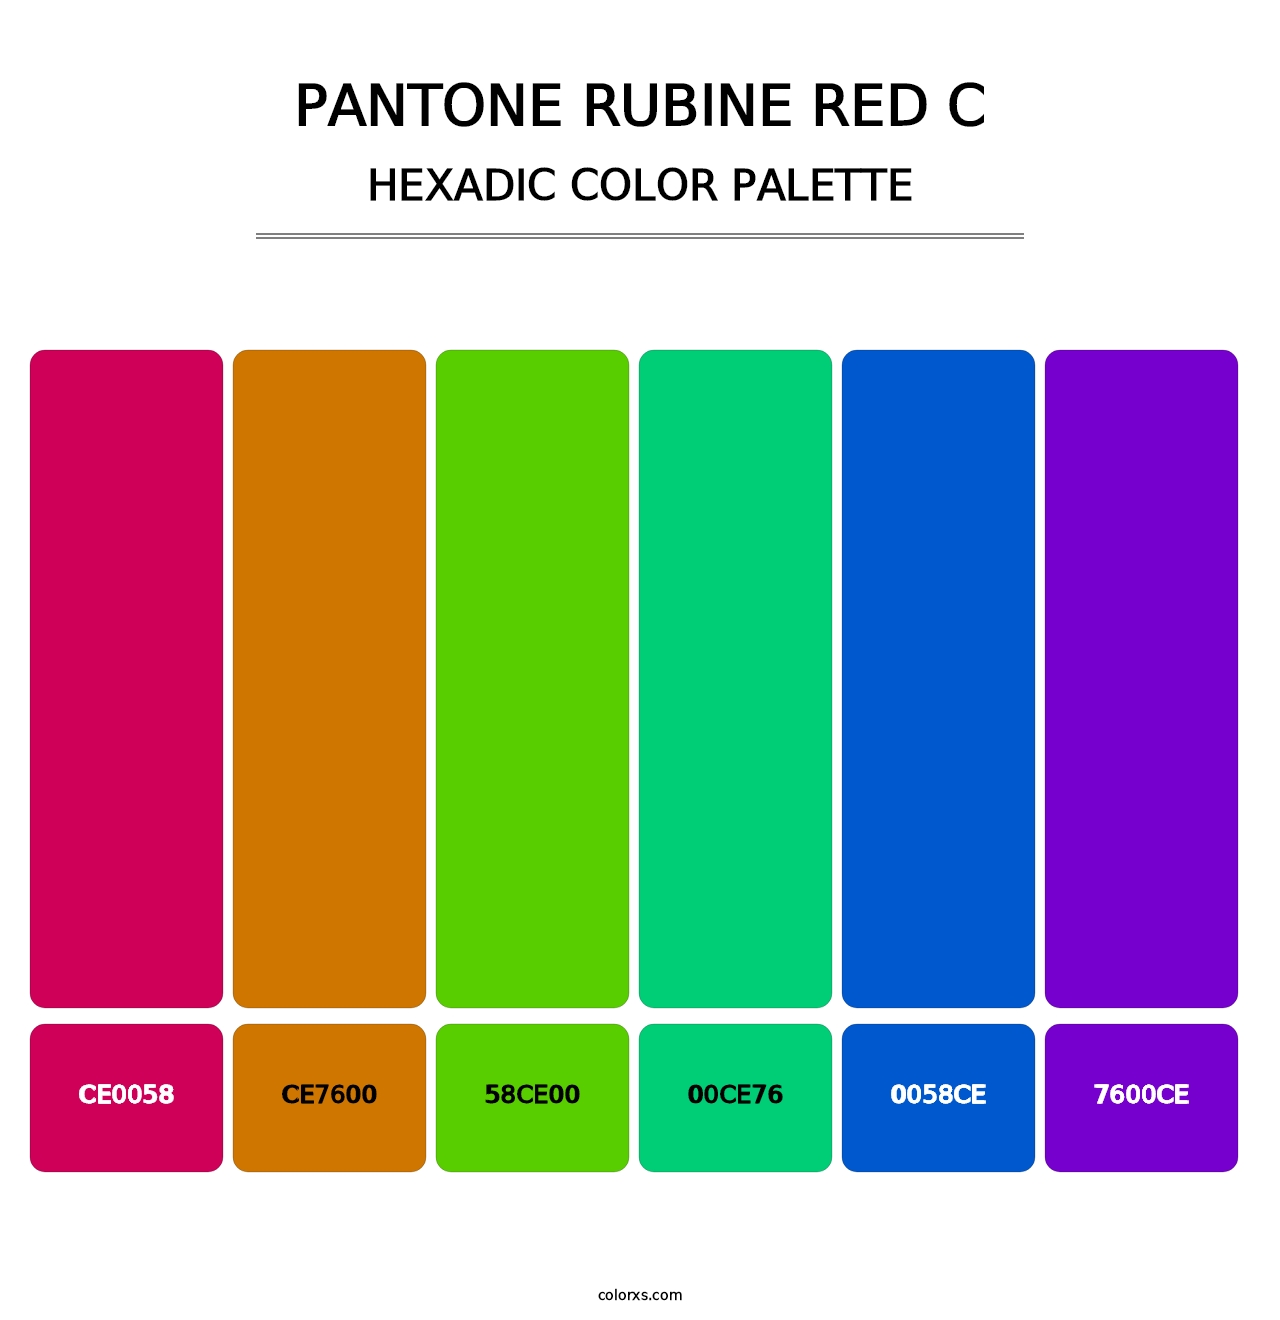 PANTONE Rubine Red C - Hexadic Color Palette